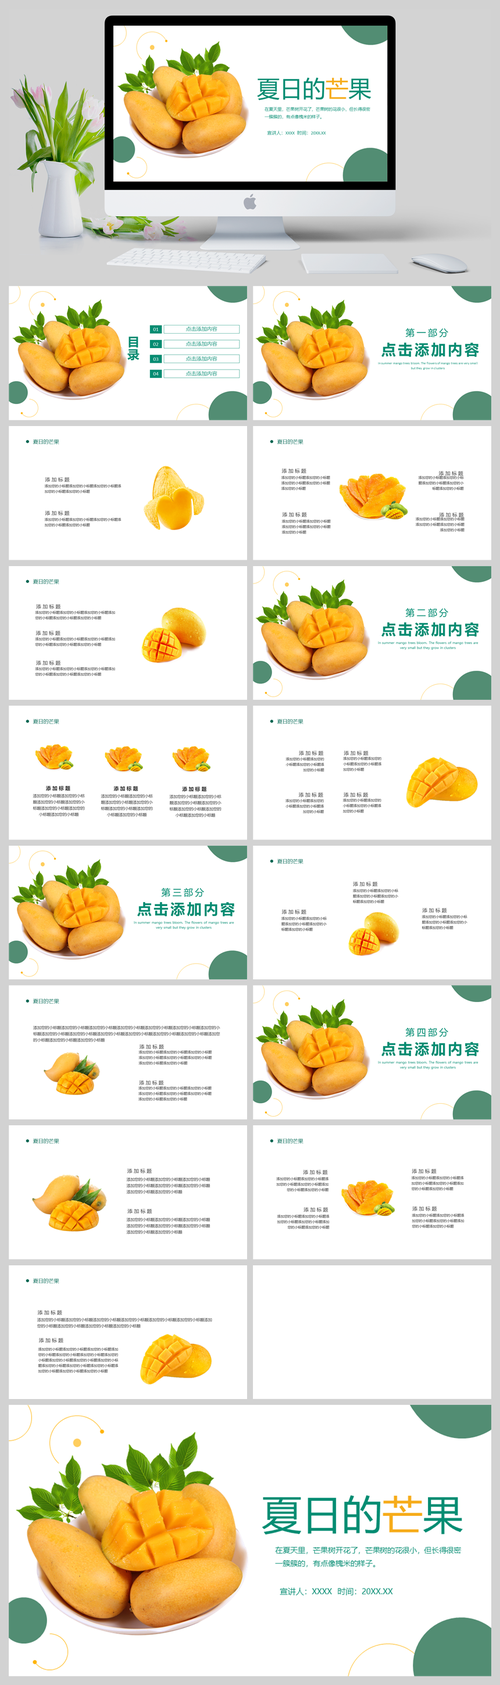 夏日的芒果水果产品介绍营销ppt模板